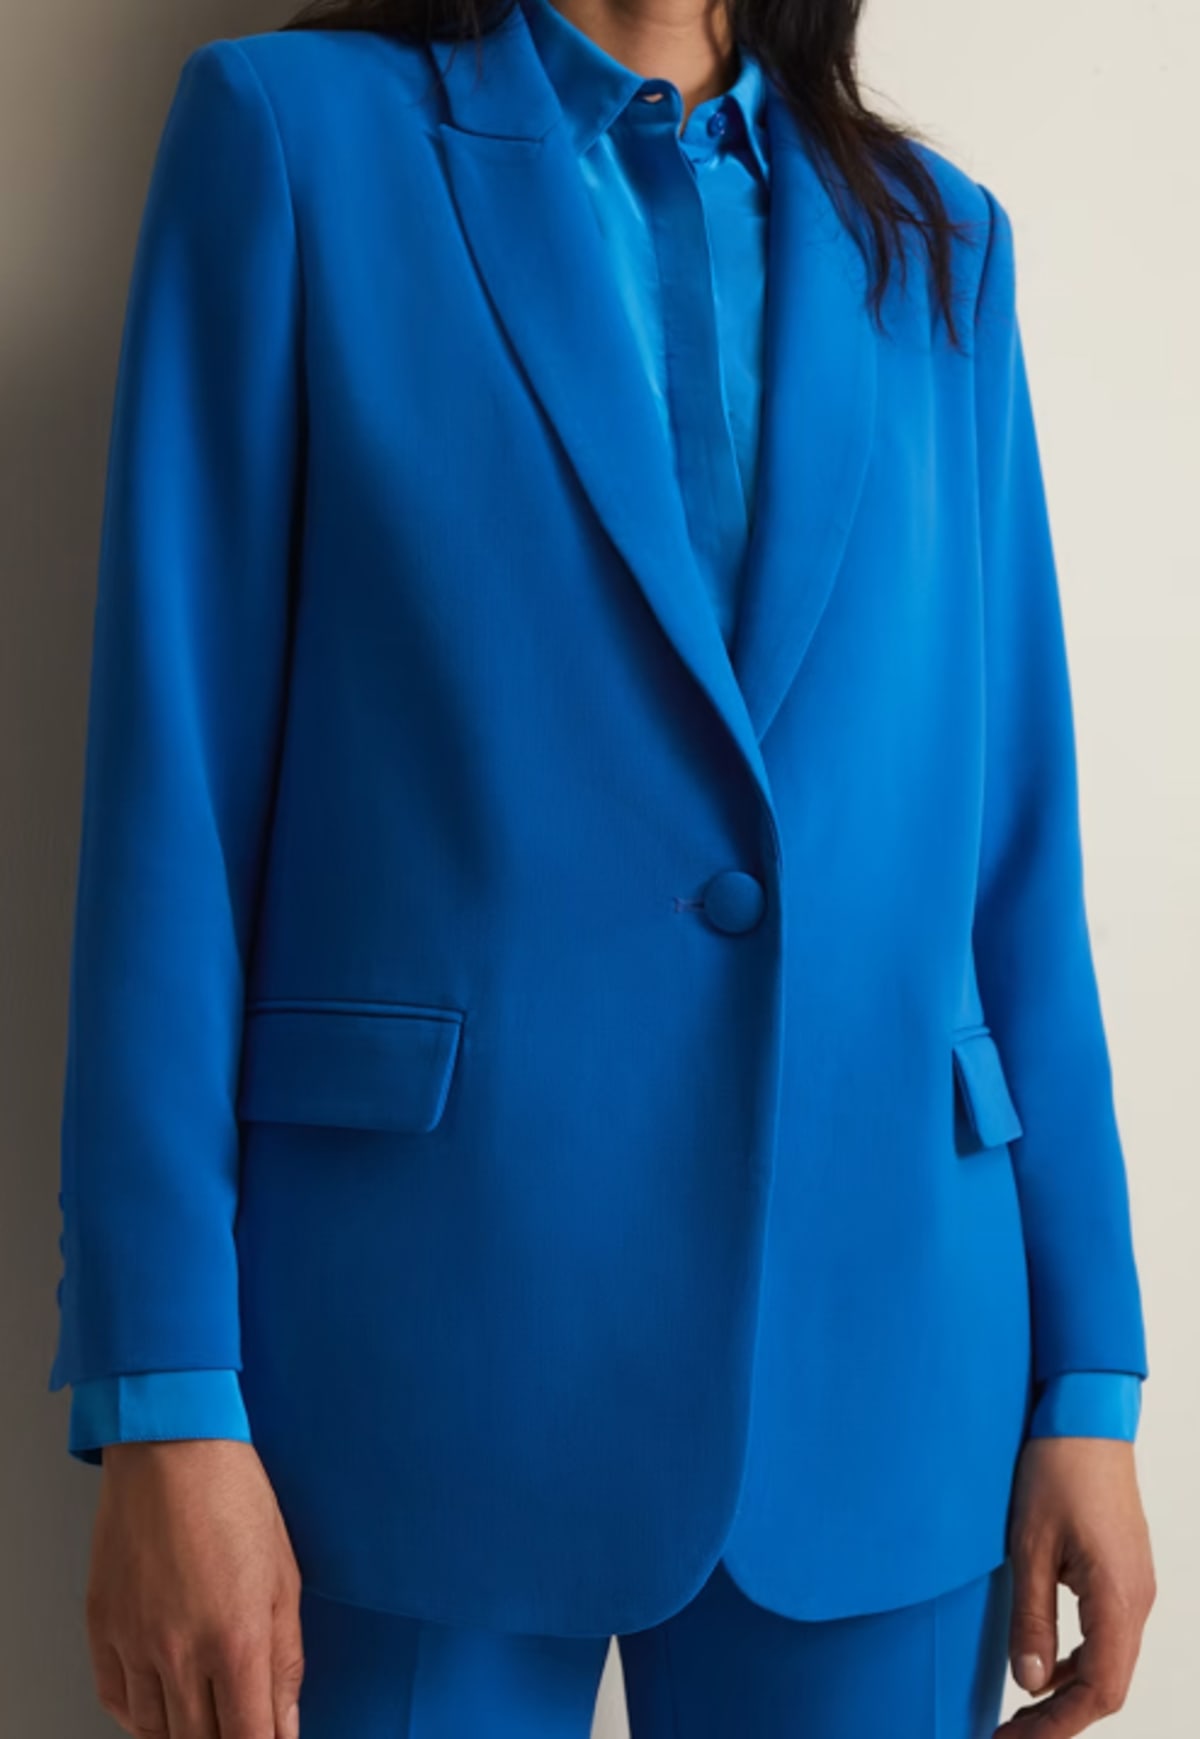 Phase Eight blue suit jacket